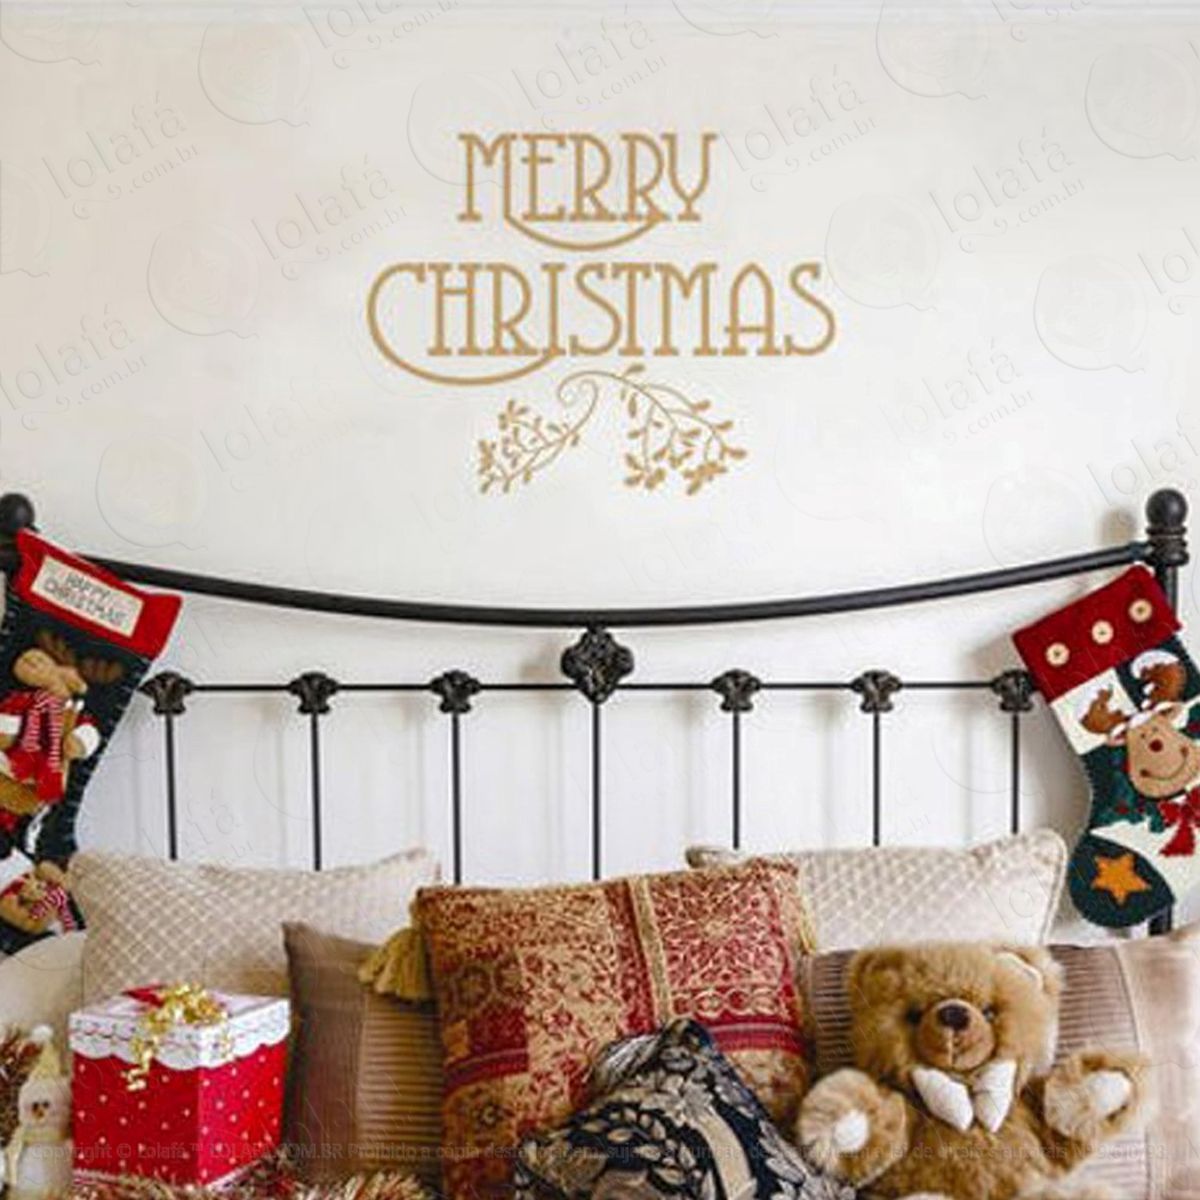 marry christmas adesivo de natal para vitrine, parede, porta de vidro - decoração natalina mod:104